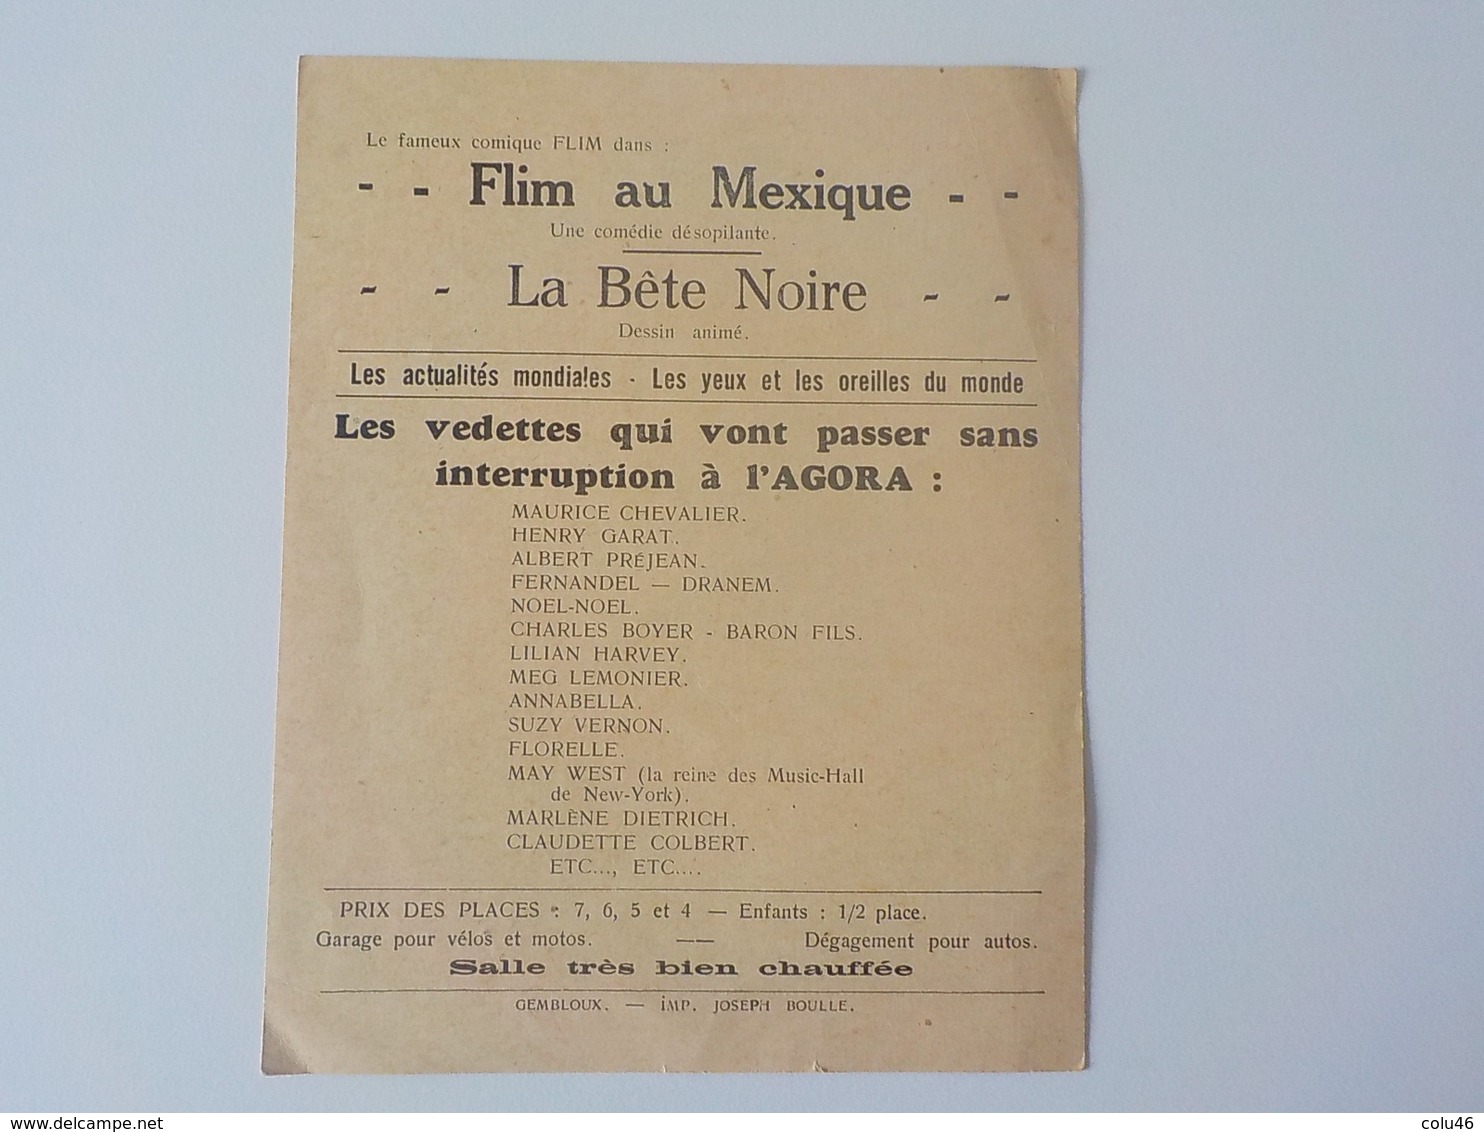 1934 Gembloux Programme Cinéma Agora Testament Docteur Mabuse Fritz Lang Film Cinématographie - Gembloux